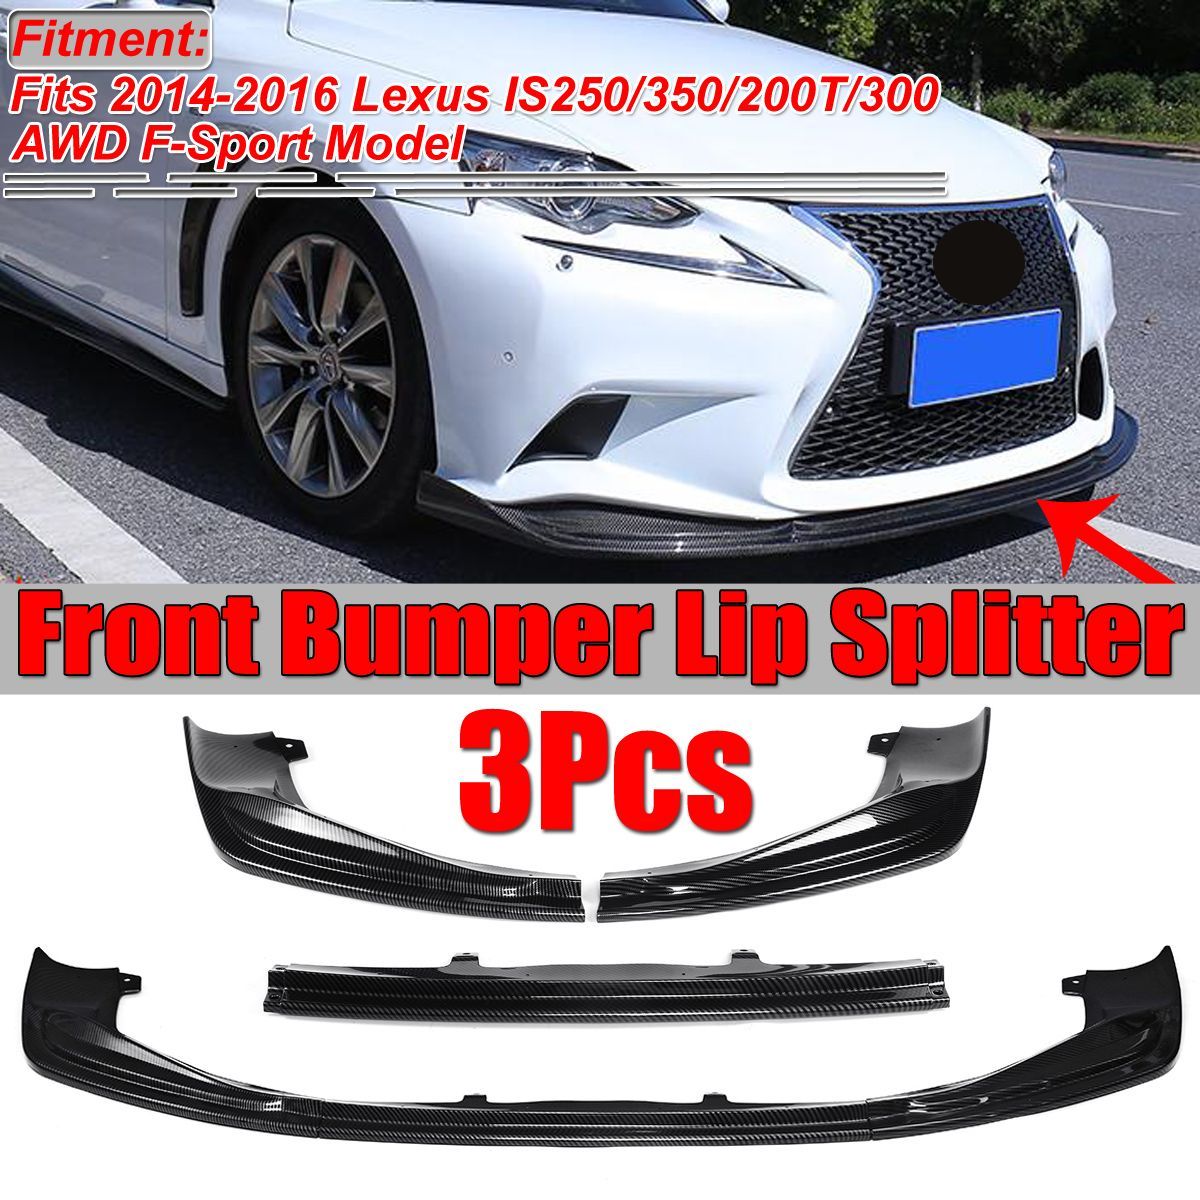 3PCS-Front-Bumper-Lip-Splitter-For-Lexus-2014-2016-IS250-IS350-IS200T-F-SPORT-STYLE-JDM-Strip-1540980